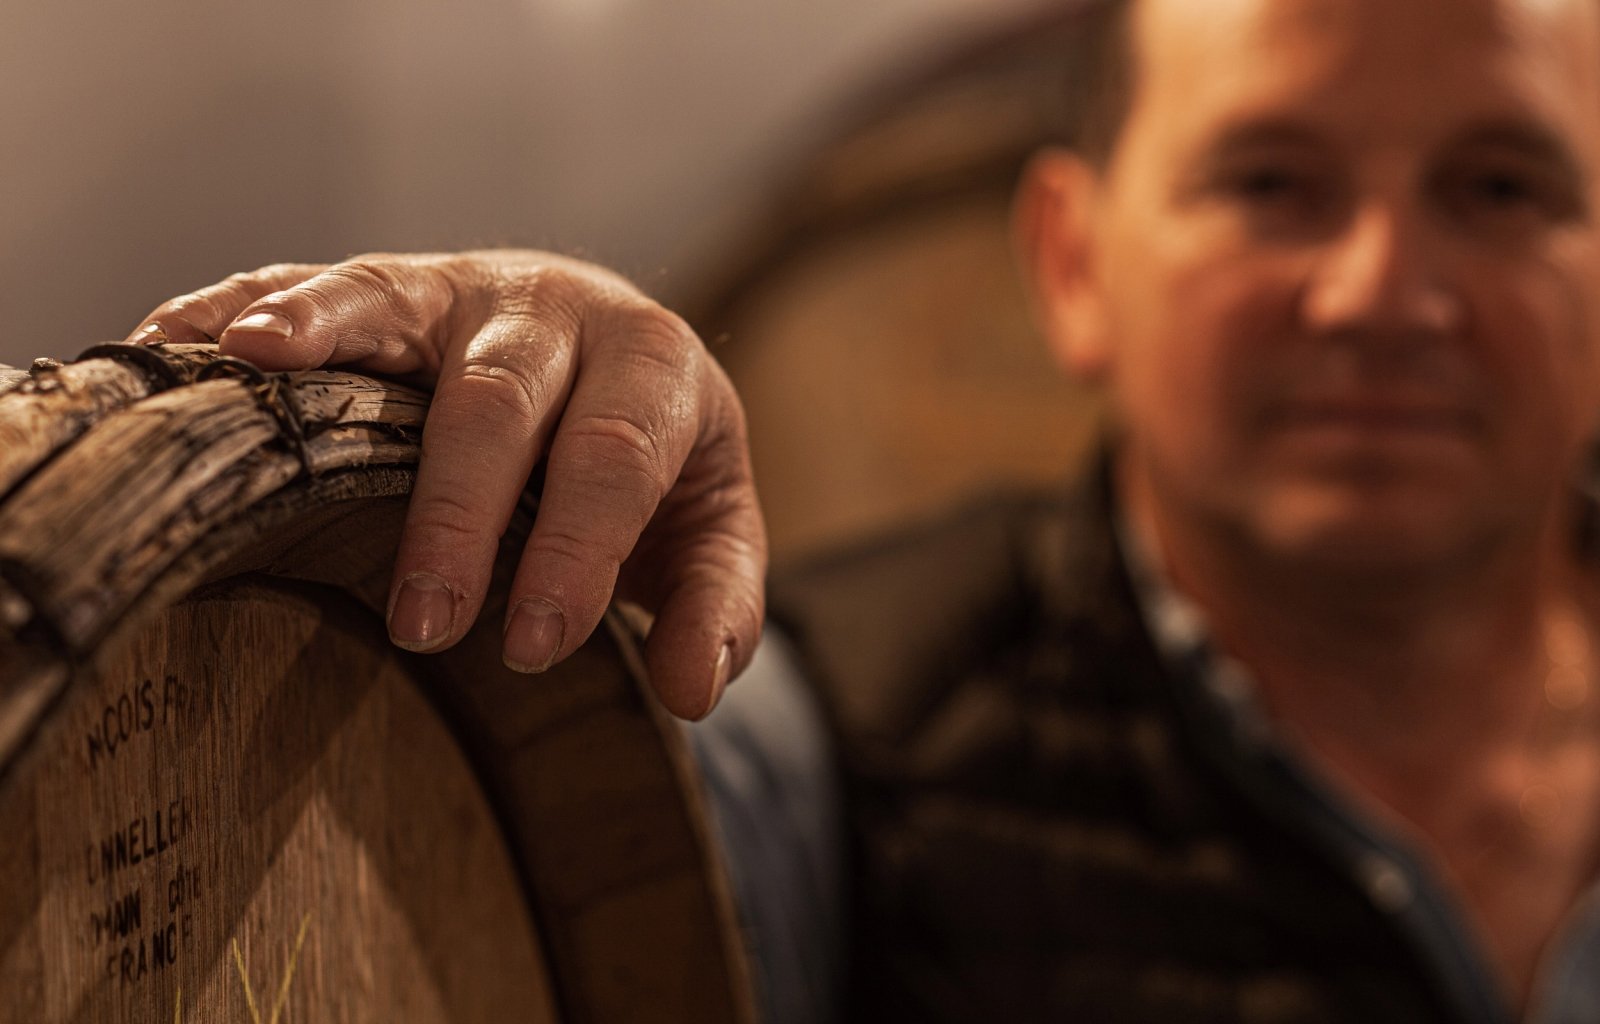 Photographie d'Éric Lagache, vigneron dans sa cave où le champagne repose en fût de bois